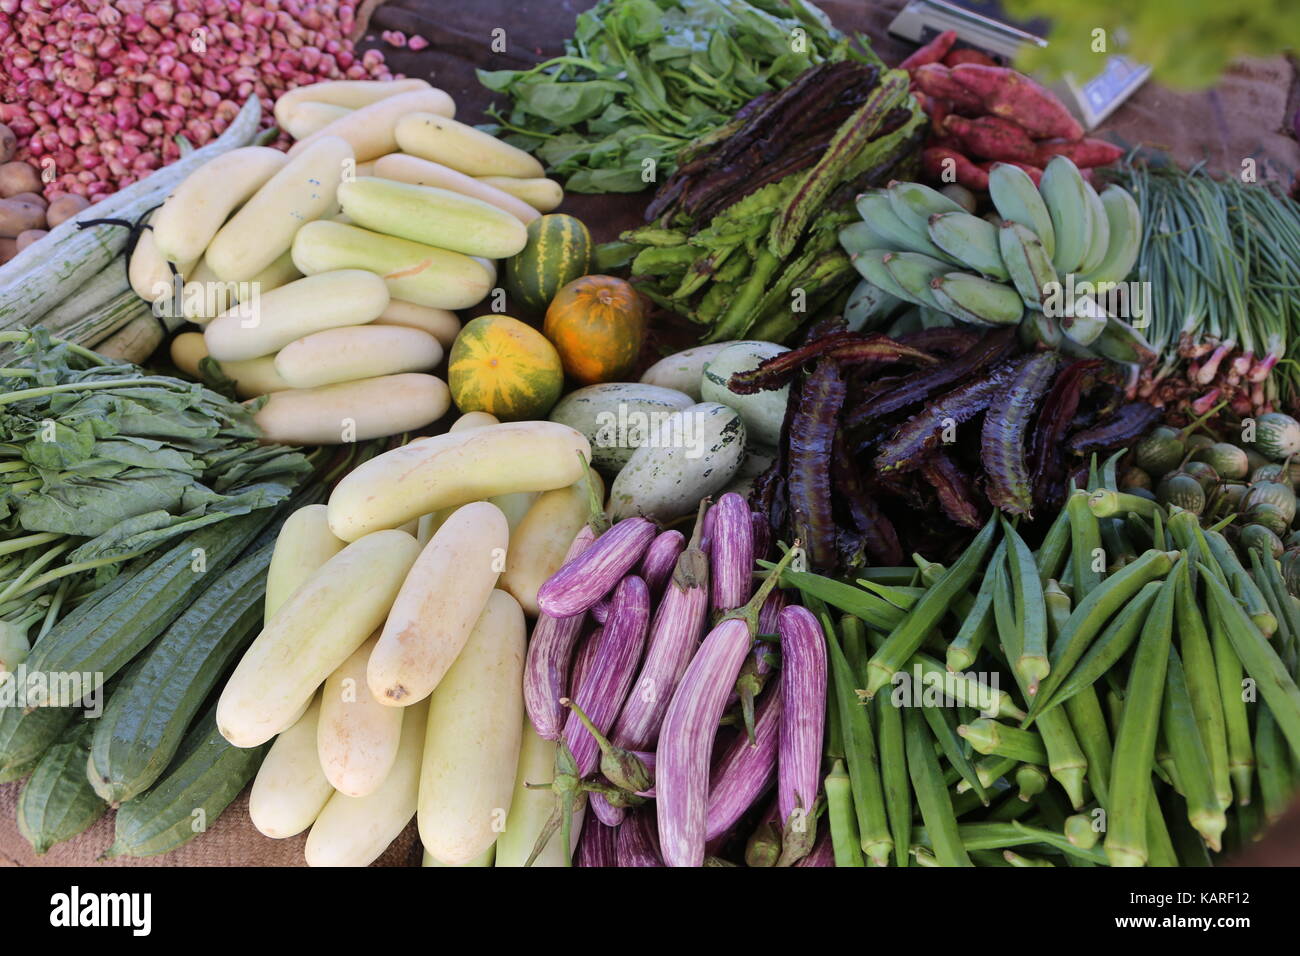 Varie le verdure e la frutta in un mercato asiatico --- Verschiedene Gemüse und Früchte auf einem asiatischen markt Foto Stock